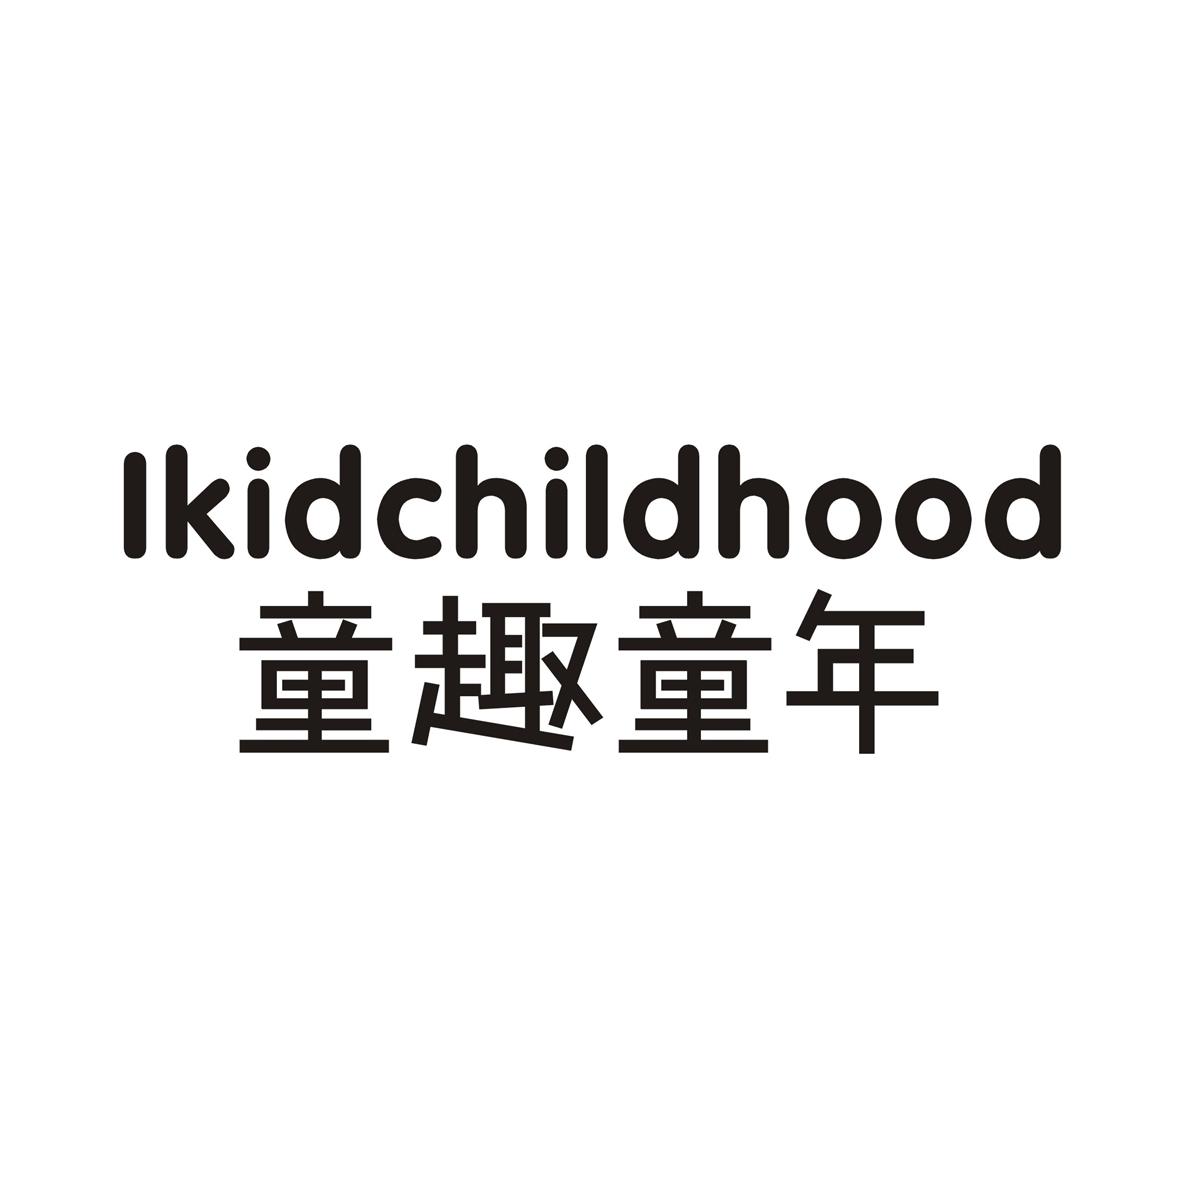 购买童趣童年 LKIDCHILDHOOD商标，优质3类-日化用品商标买卖就上蜀易标商标交易平台